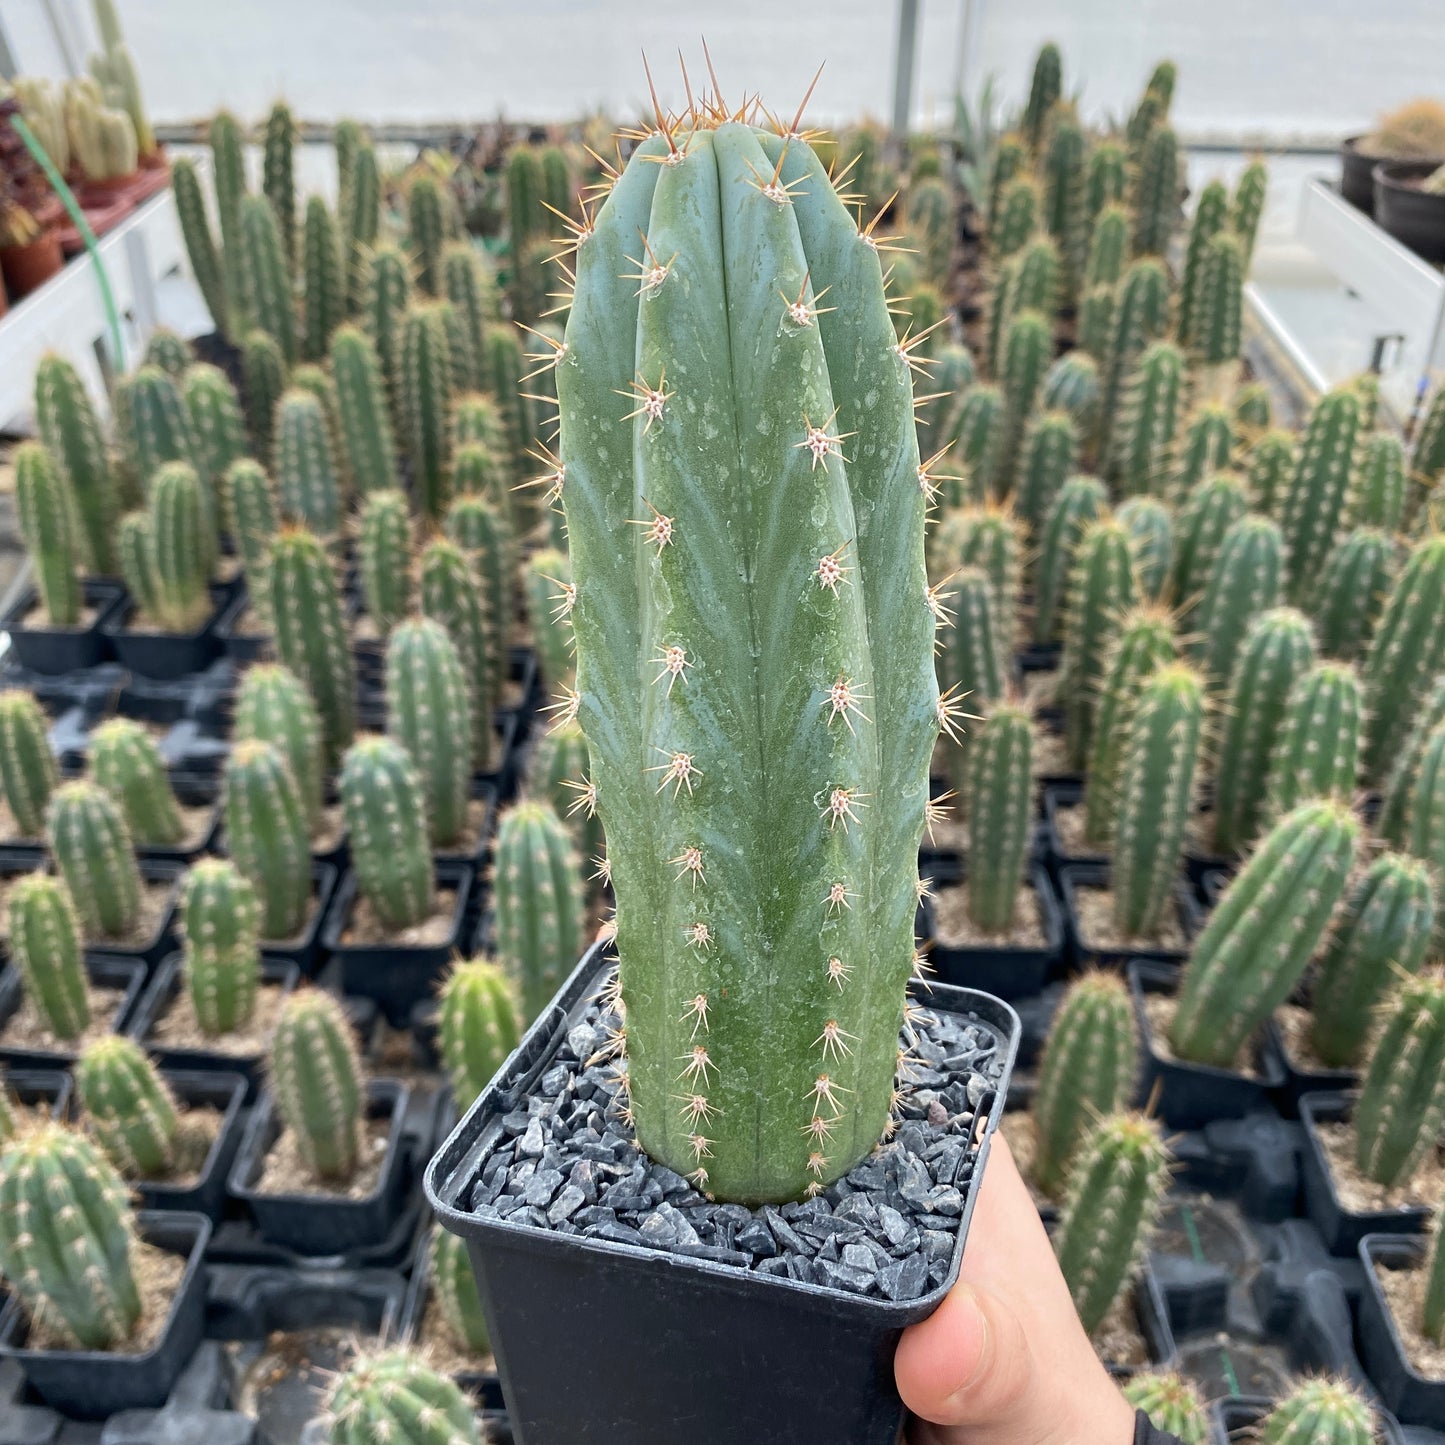 Trichocereus macrogonus subesp. pachanoi (Echinopsis pachanoi) " Cactus San Pedro"